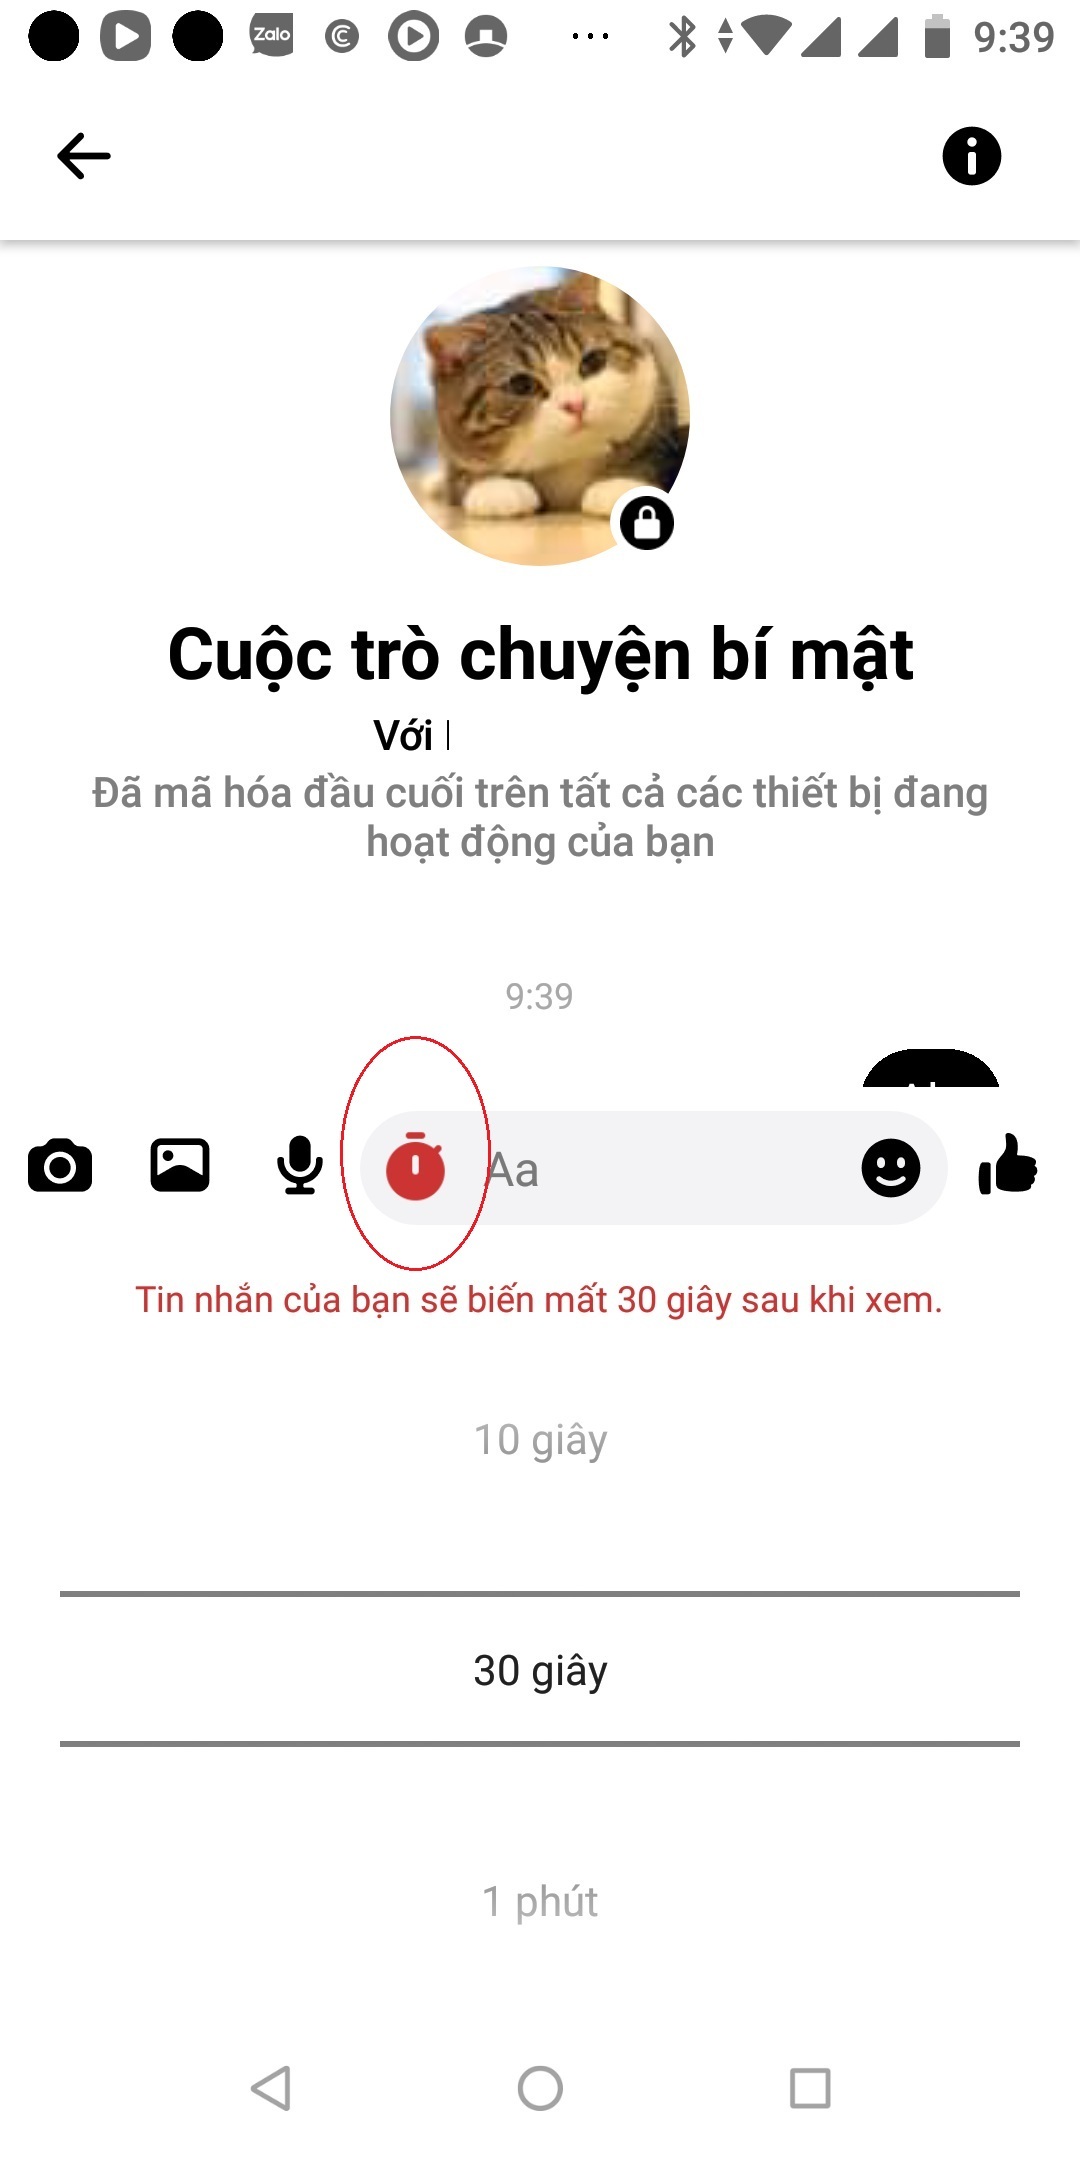 Tổng hợp cách xóa tin nhắn vĩnh viễn trên iPhone nhanh nhất - Vui Vui Công  Nghệ